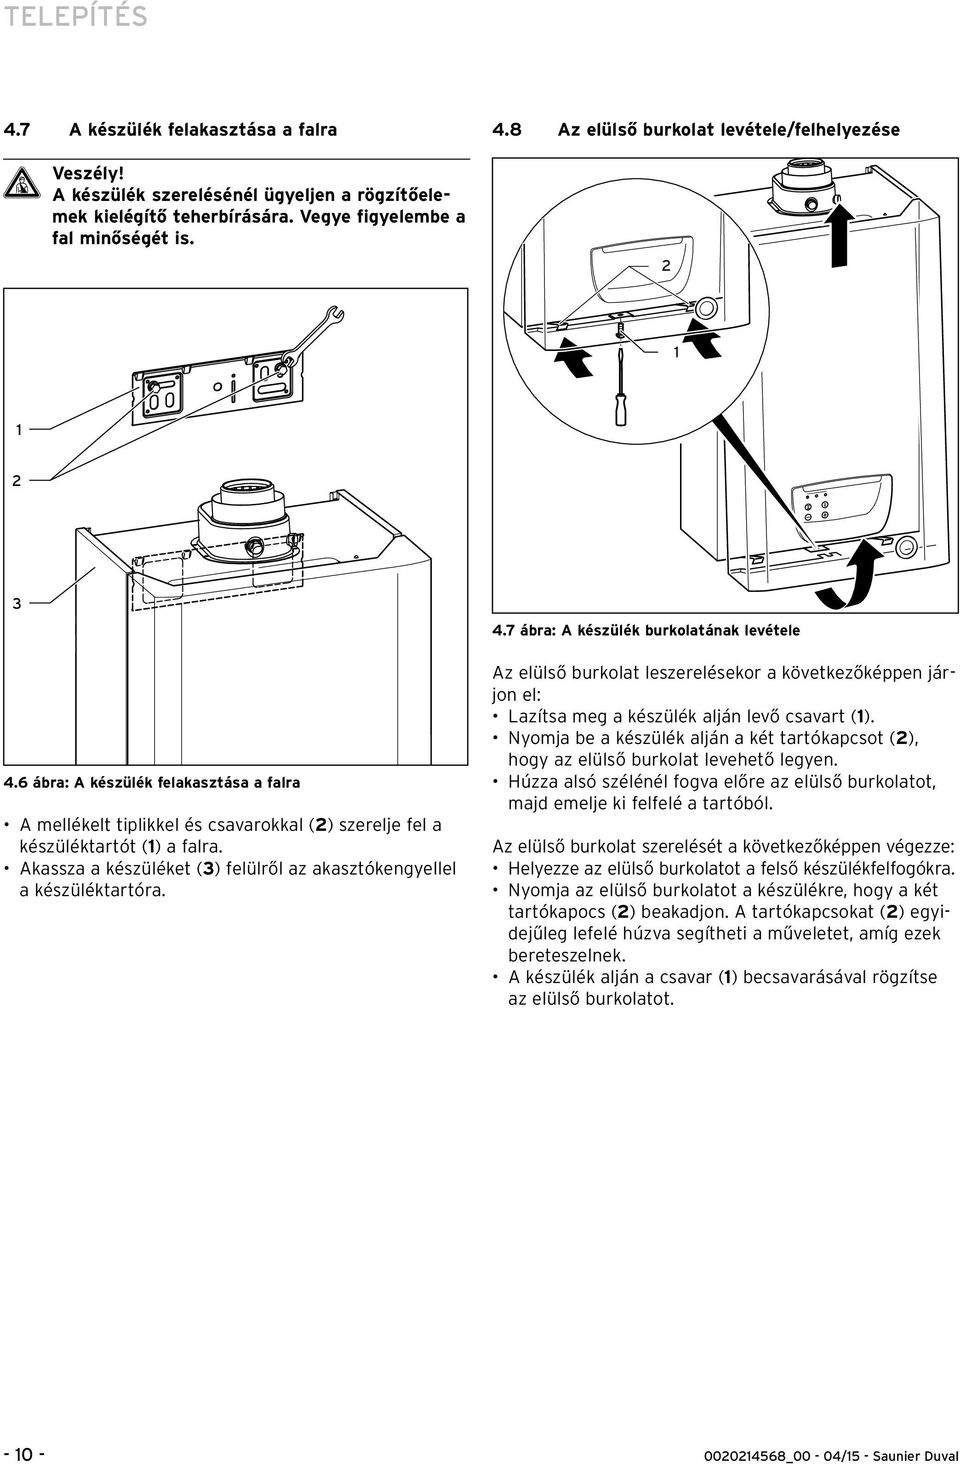 Akassza a készüléket (3) felülről az akasztókengyellel a készüléktartóra. 4.